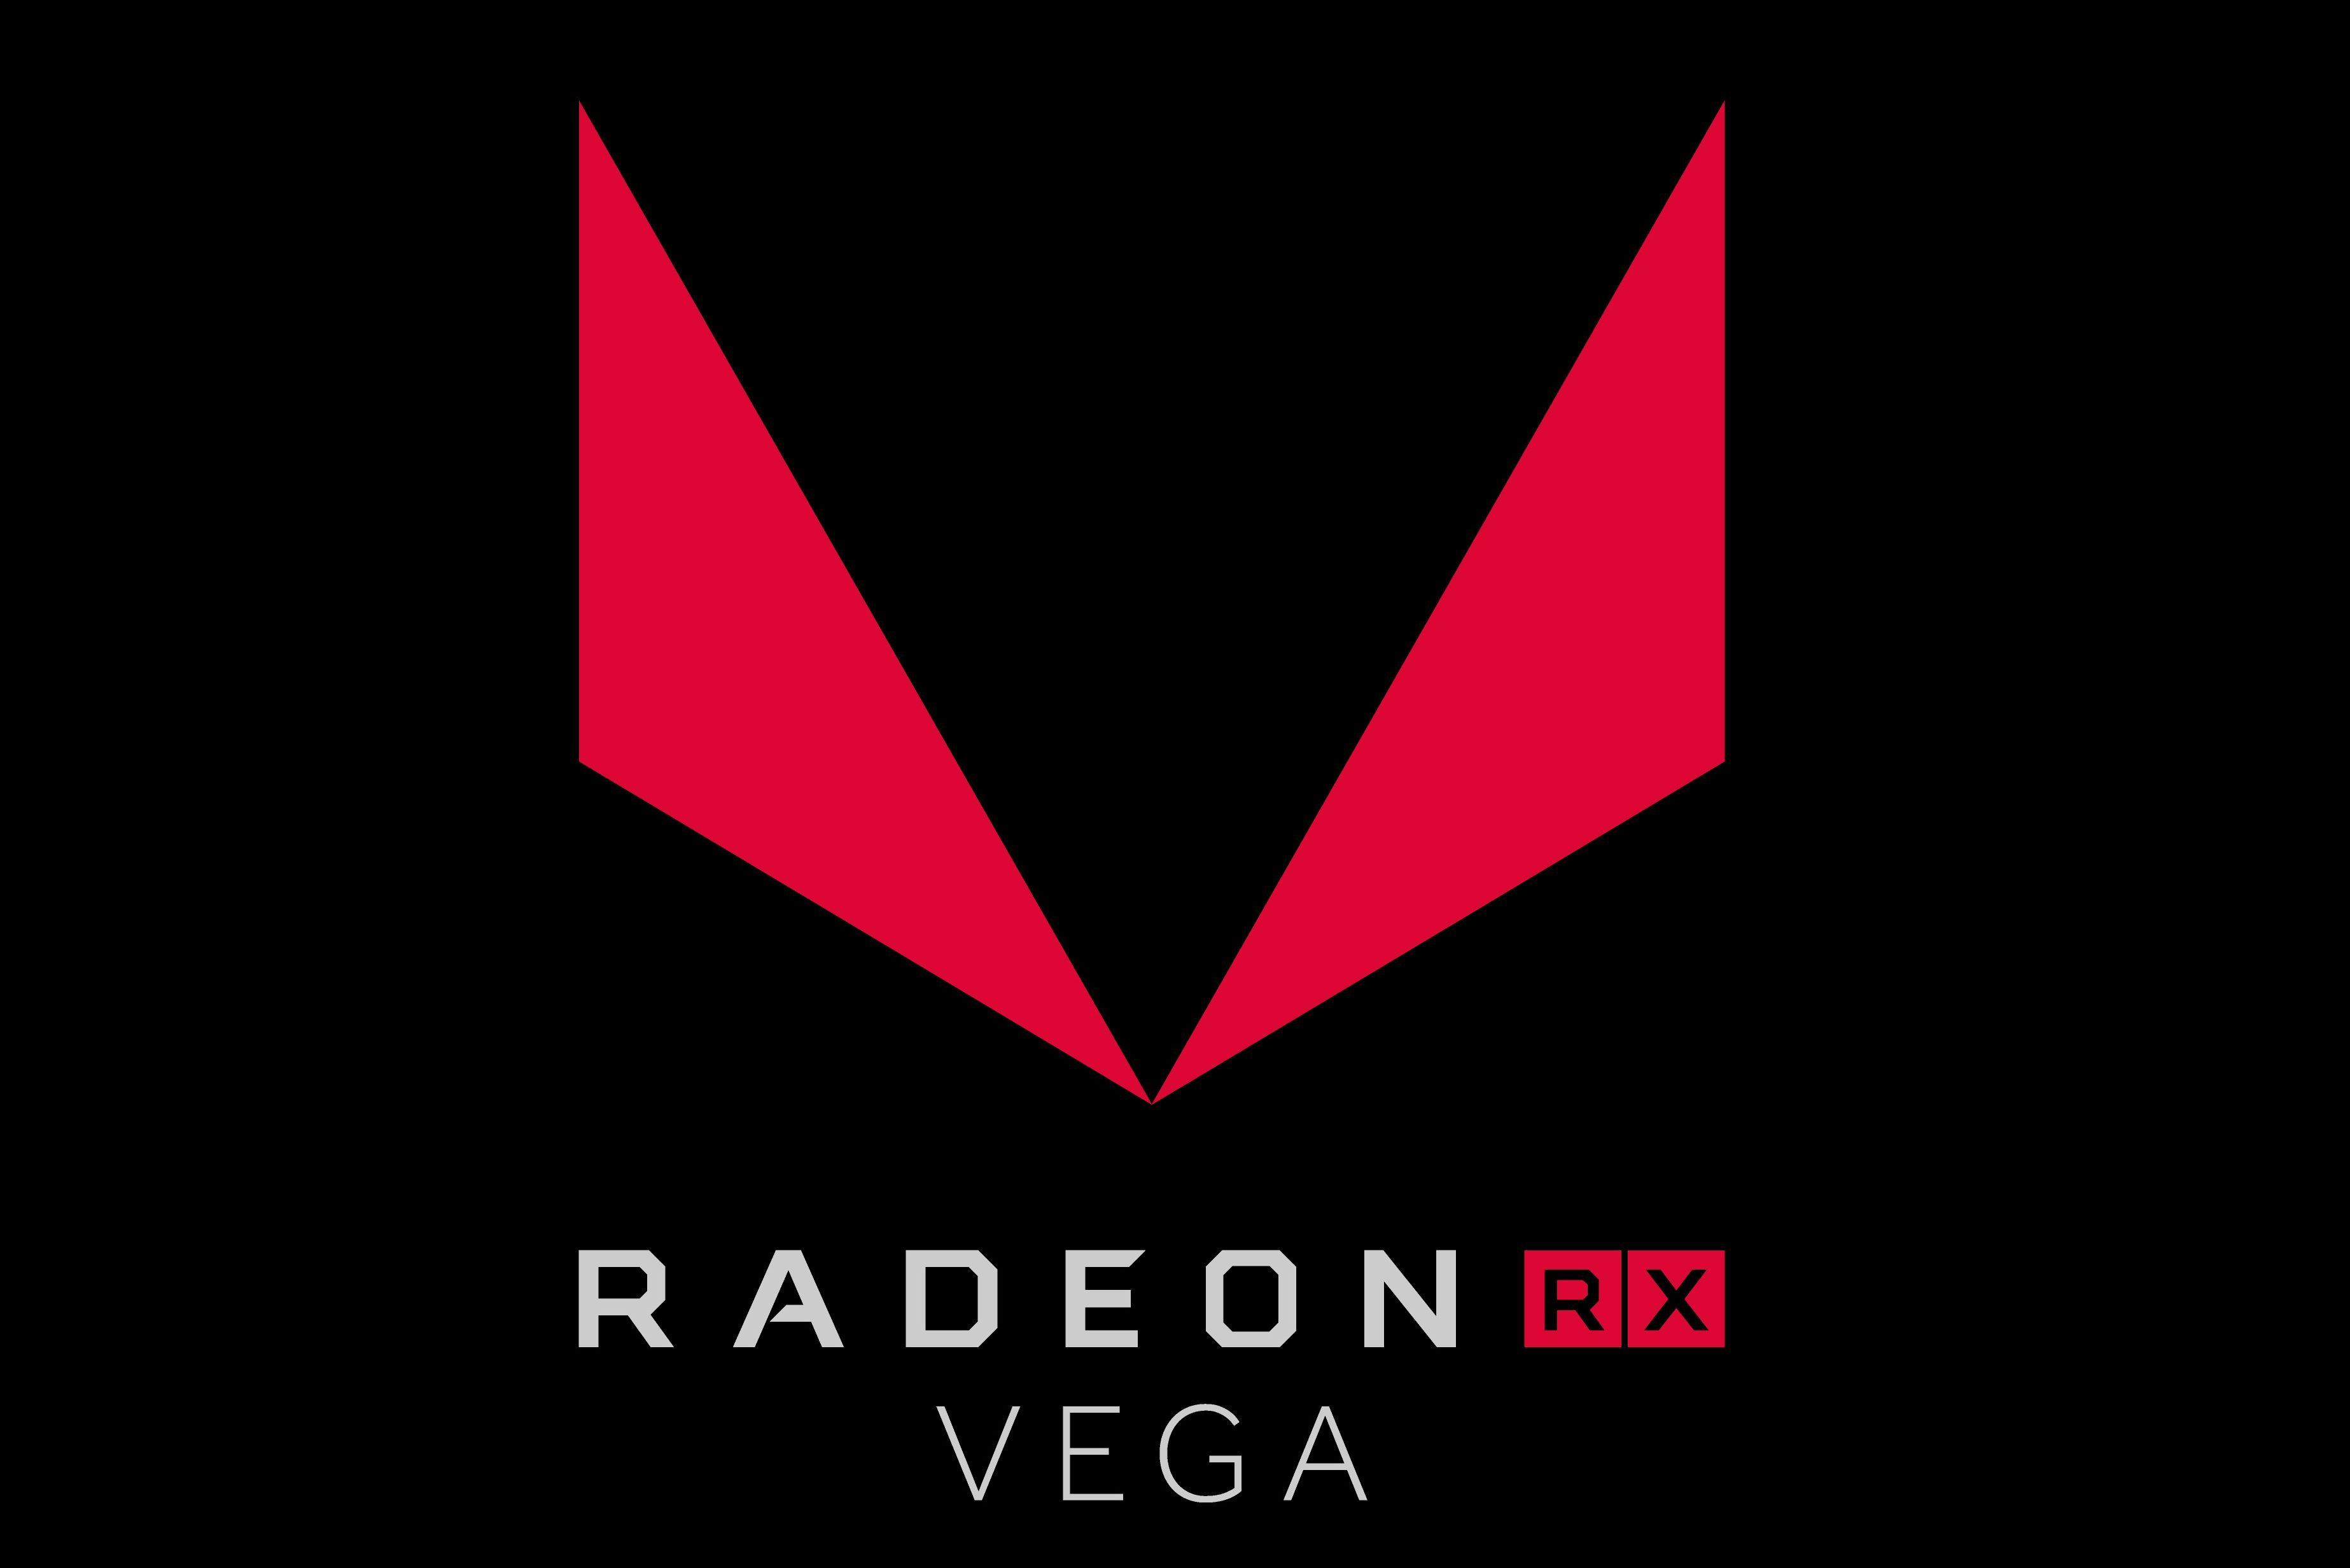 Immagine pubblicata in relazione al seguente contenuto: AMD annuncia il periodo di lancio delle video card Radeon RX Vega consumer | Nome immagine: news26436_AMD-Radeon-RX-Vega_1.jpg